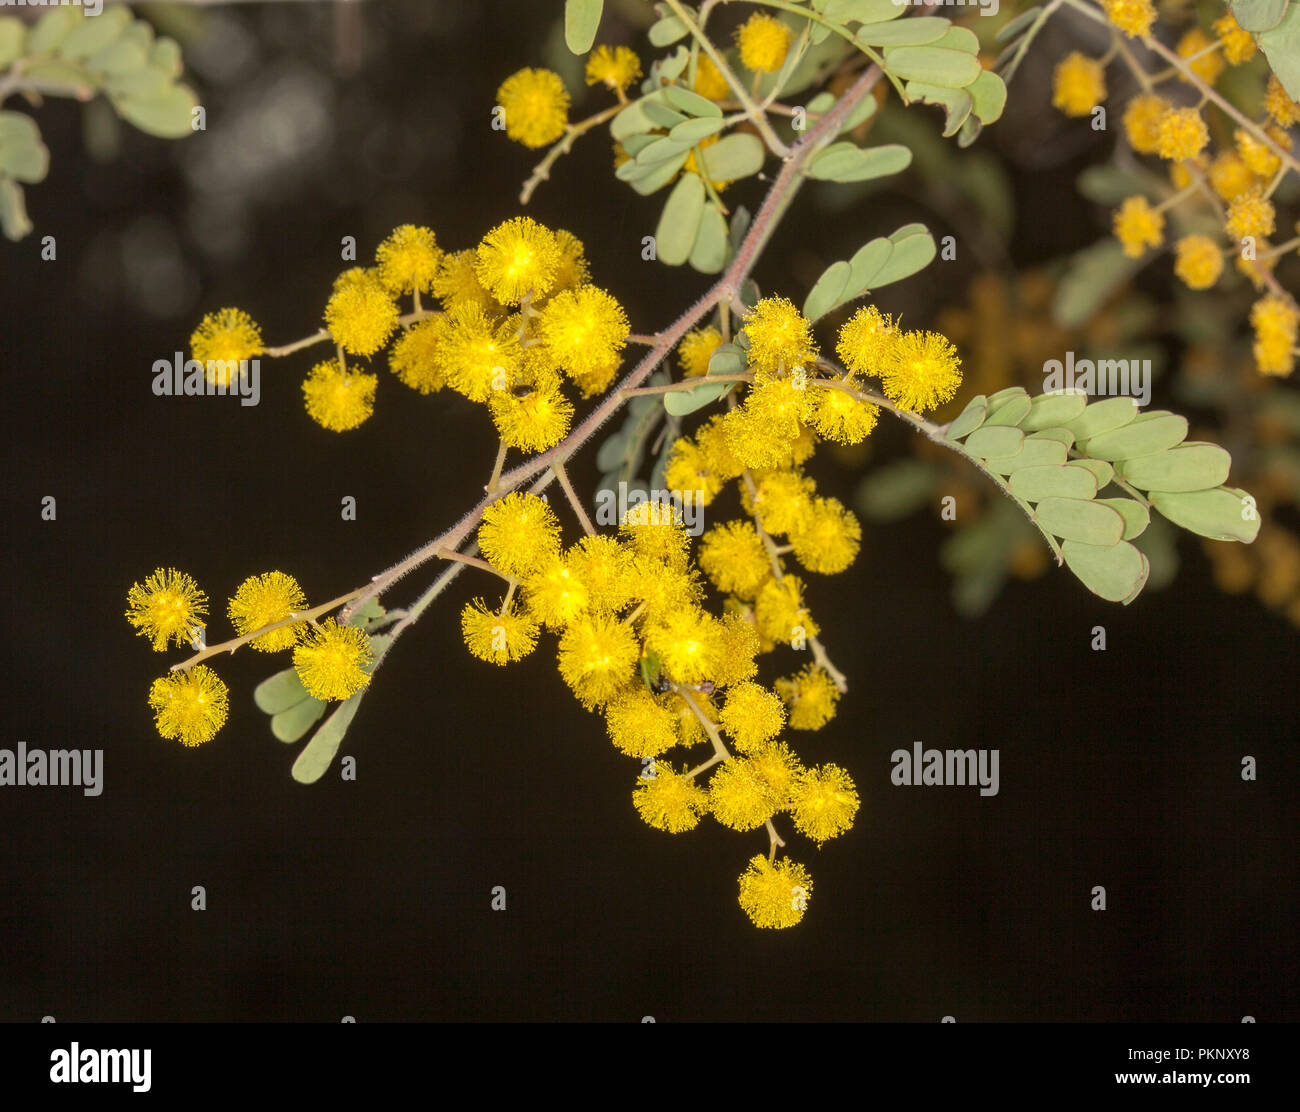 Fiori selvatici Australiano, cluster di giallo dorato Acacia / graticcio fiori e foglie verdi su sfondo scuro Foto Stock